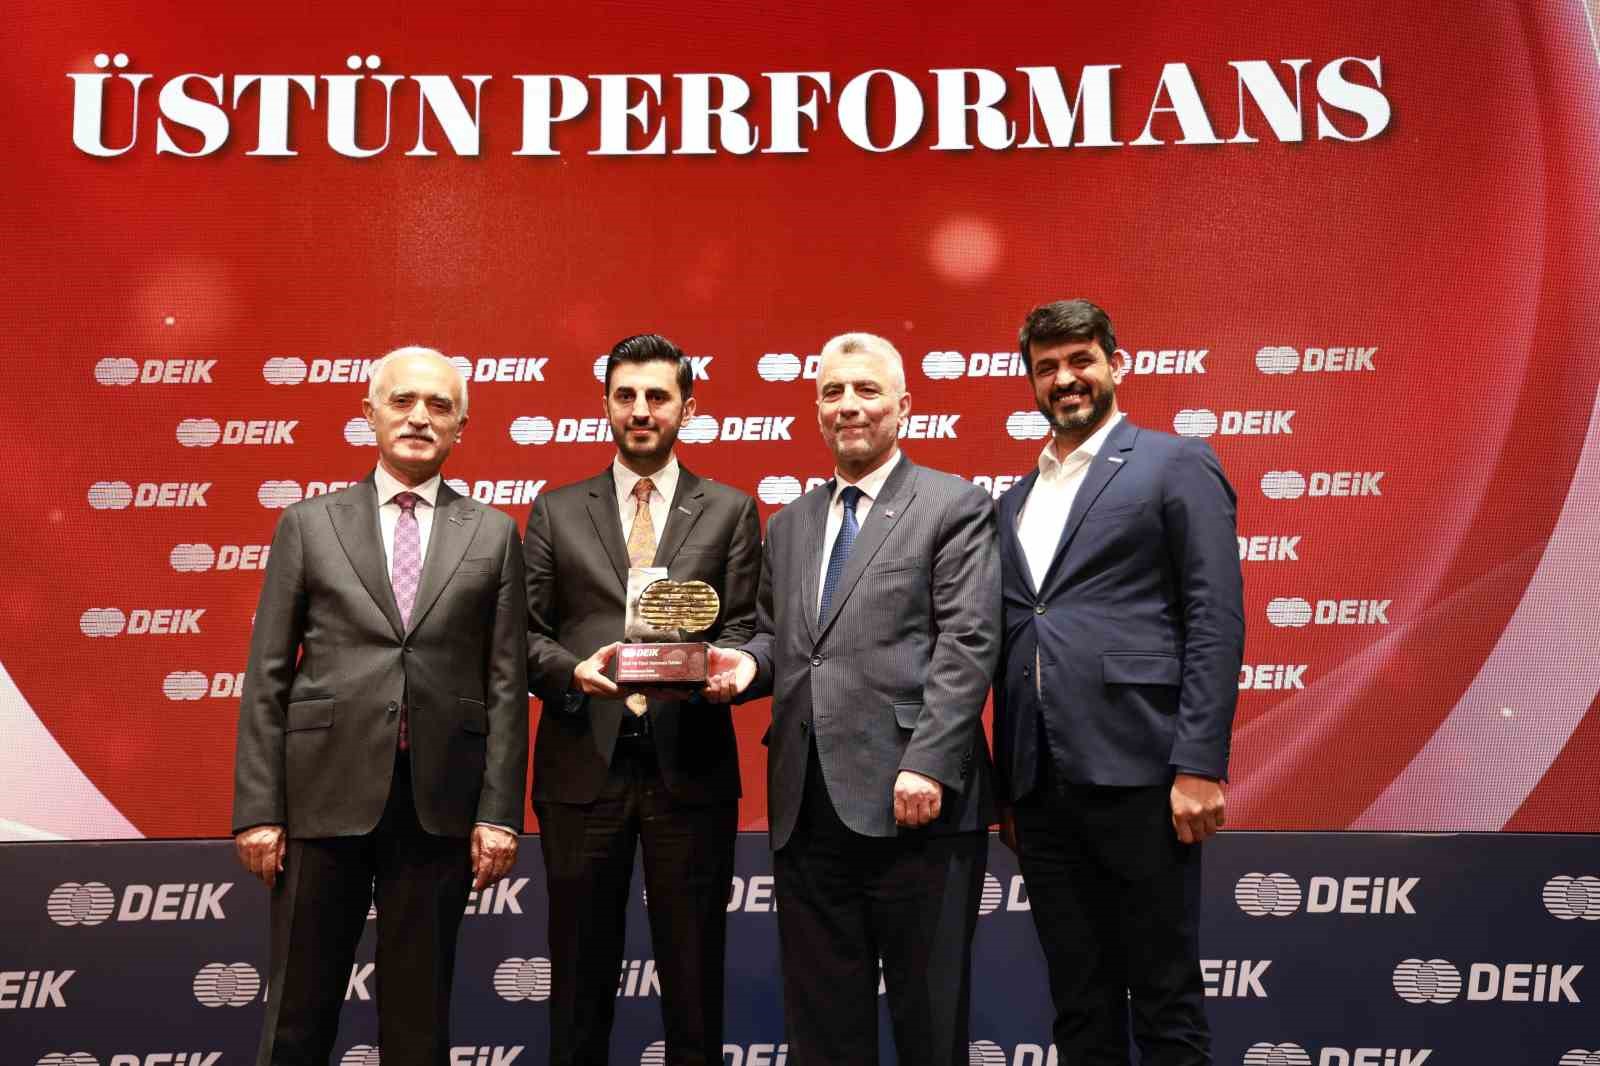 Türkiye-Irak İş Konseyi Başkanlığına yeniden seçilen Halit Acar’a üstün performans ödülü